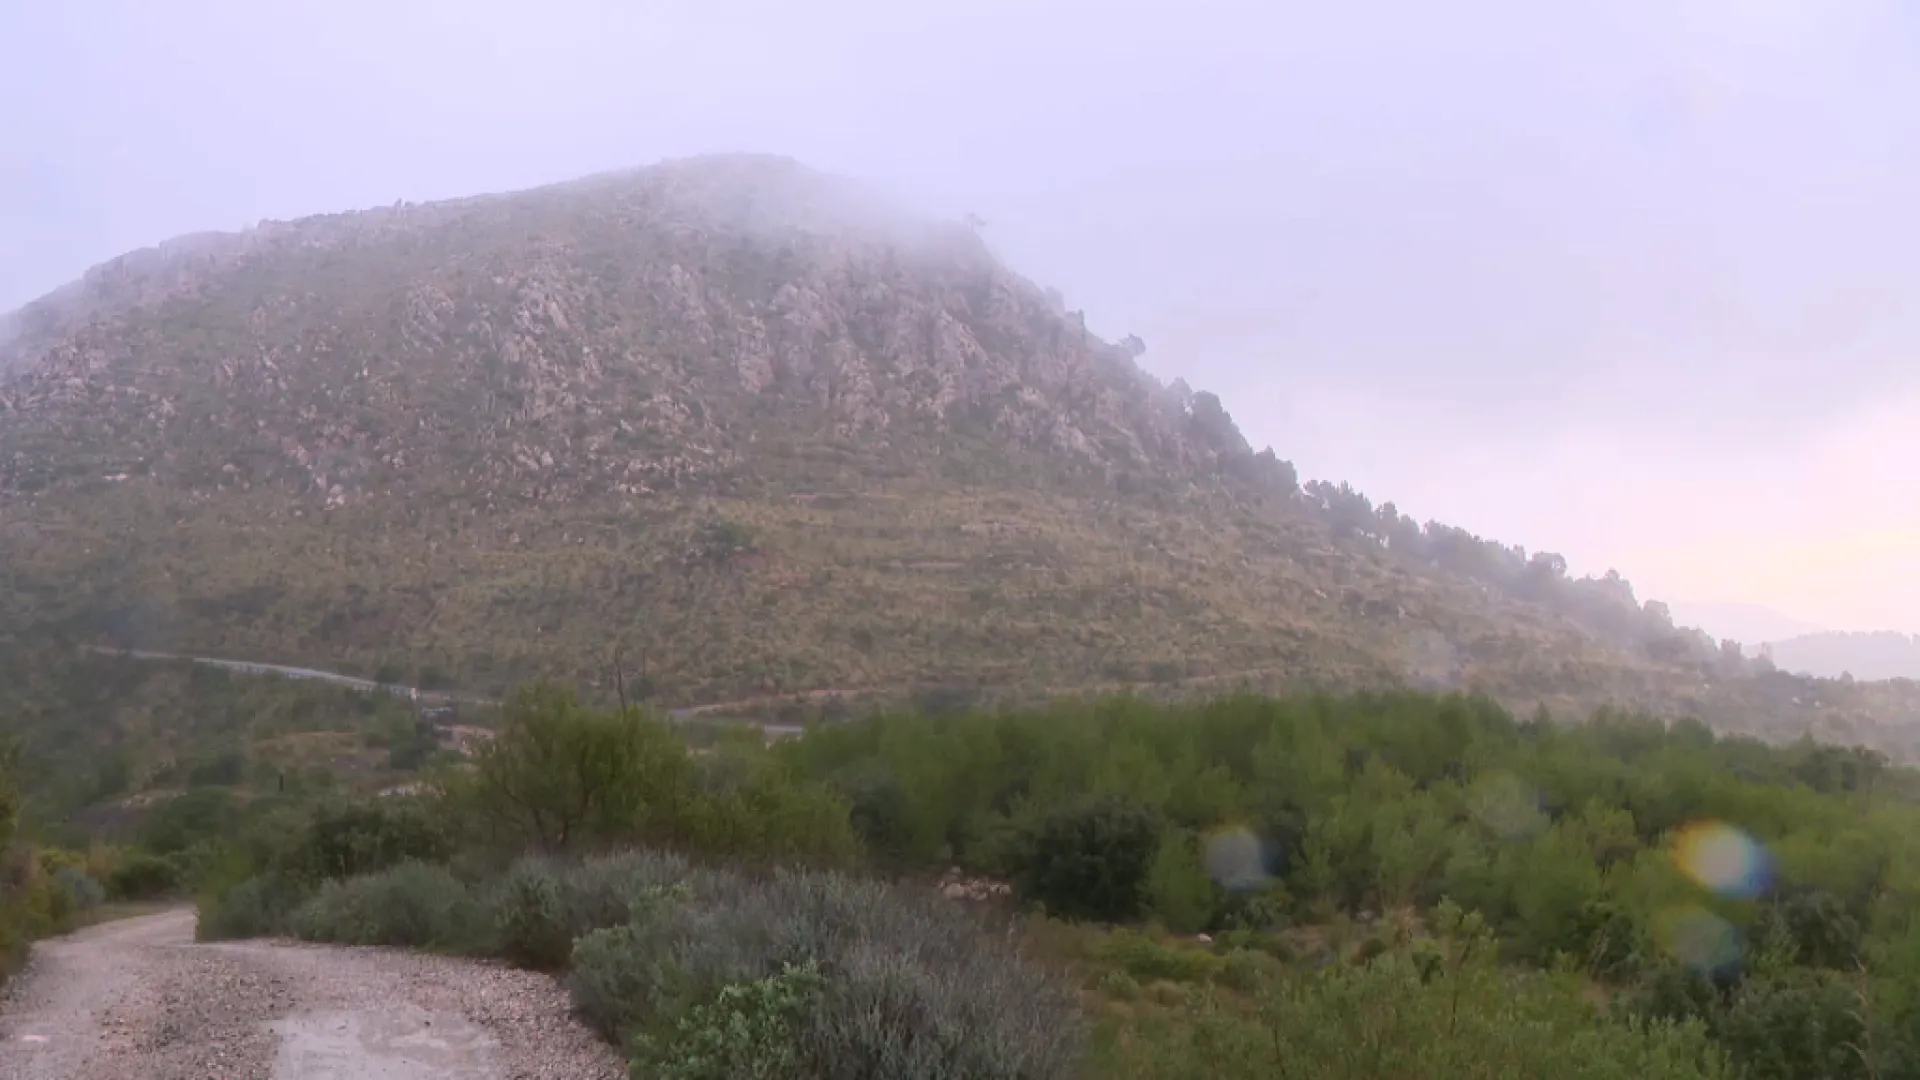 Temps+marcat+per+la+pluja+a+la+Serra+de+Tramuntana+i+el+Sud+de+Mallorca